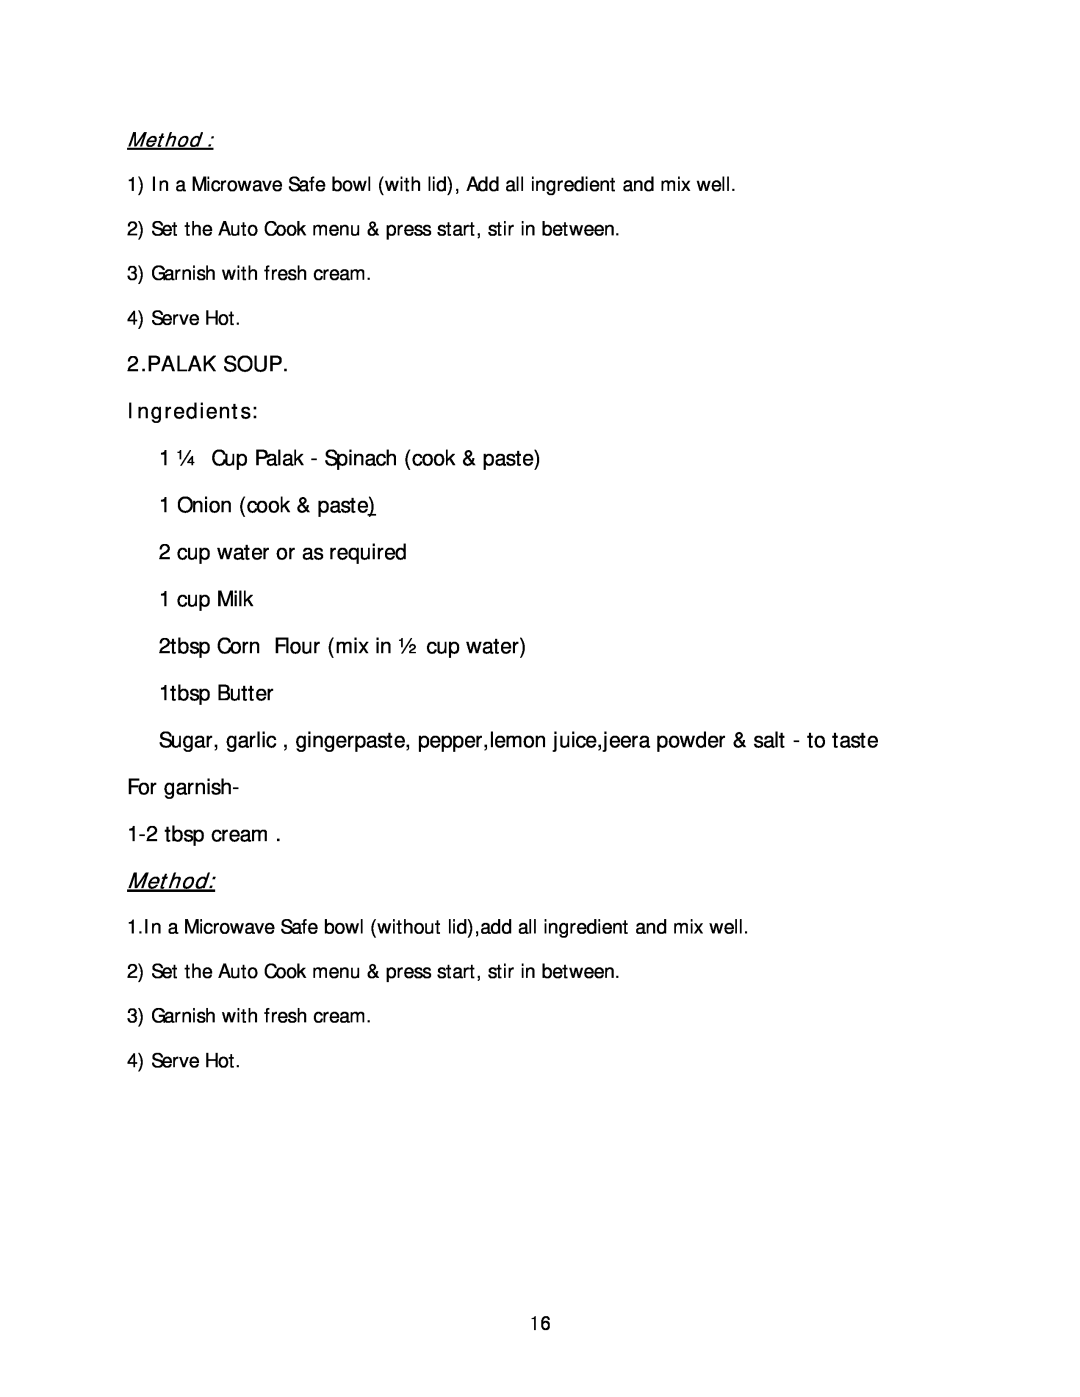 Haier HIL 2810EGCB manual PALAK SOUP Ingredients, Method 